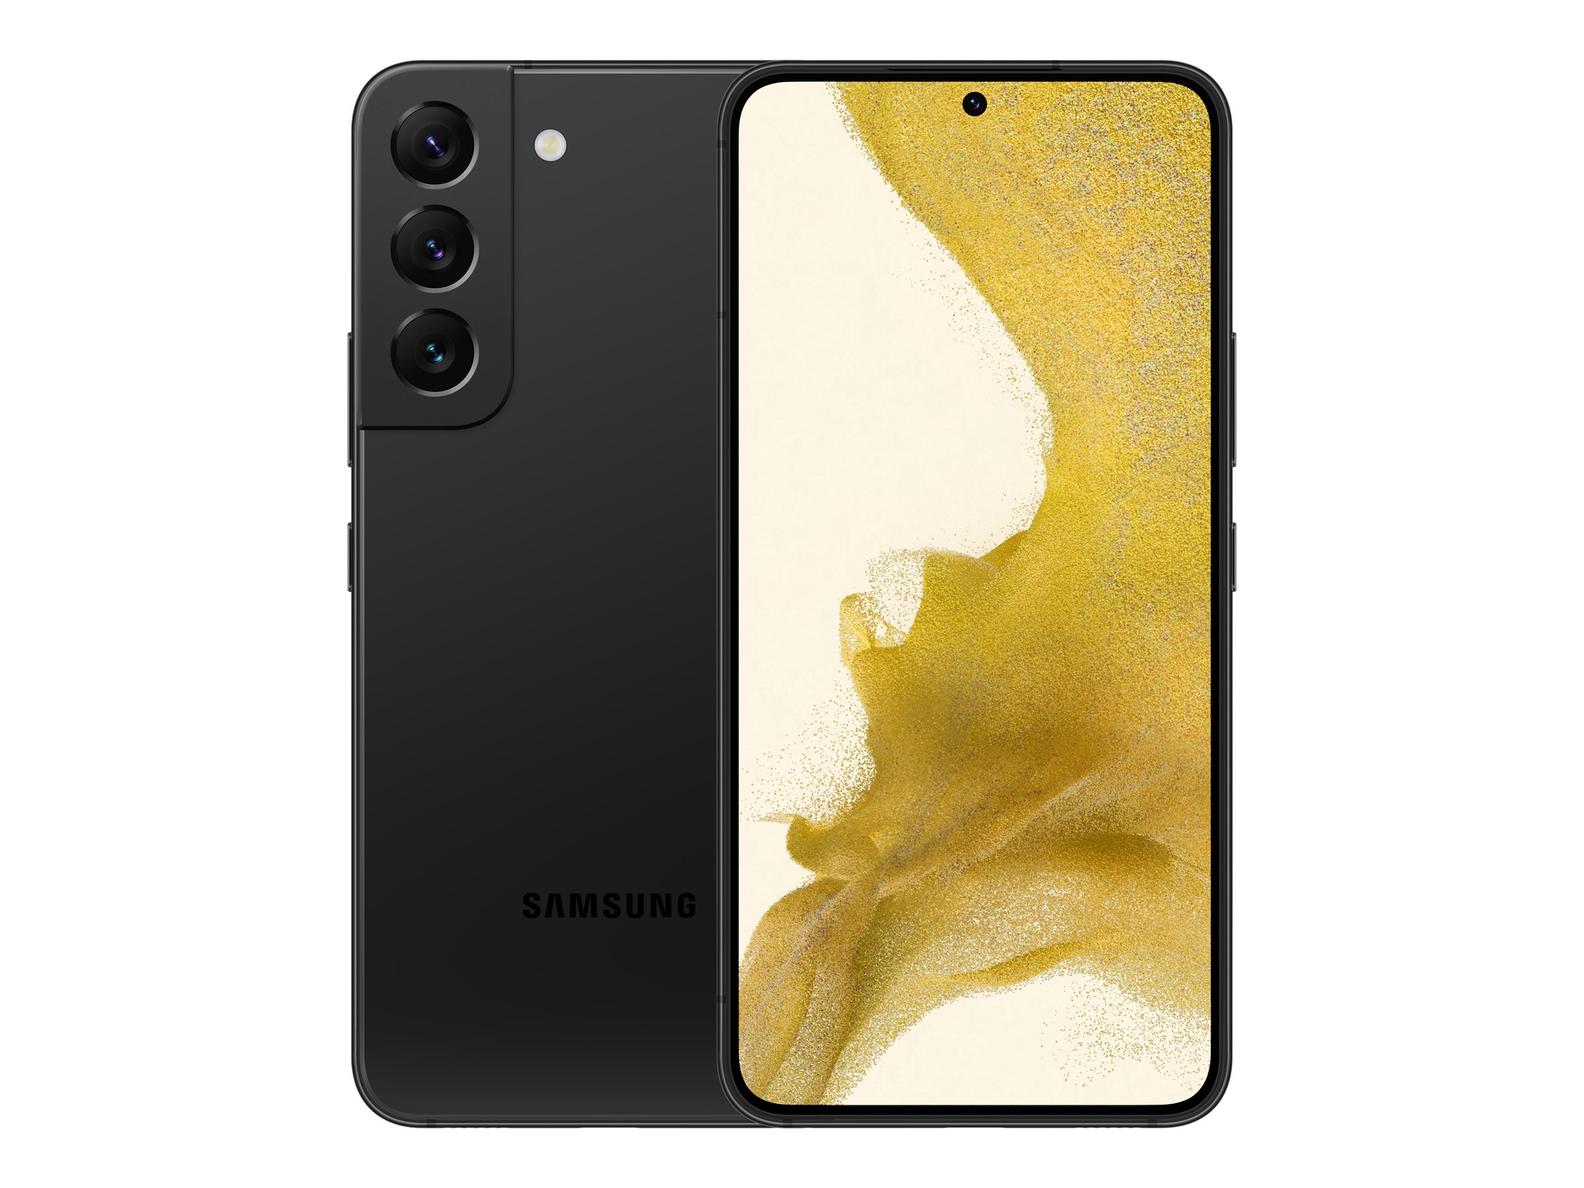 Tilbud: Samsung Galaxy S22 5G 128GB, svart kr 7592 på Telenor